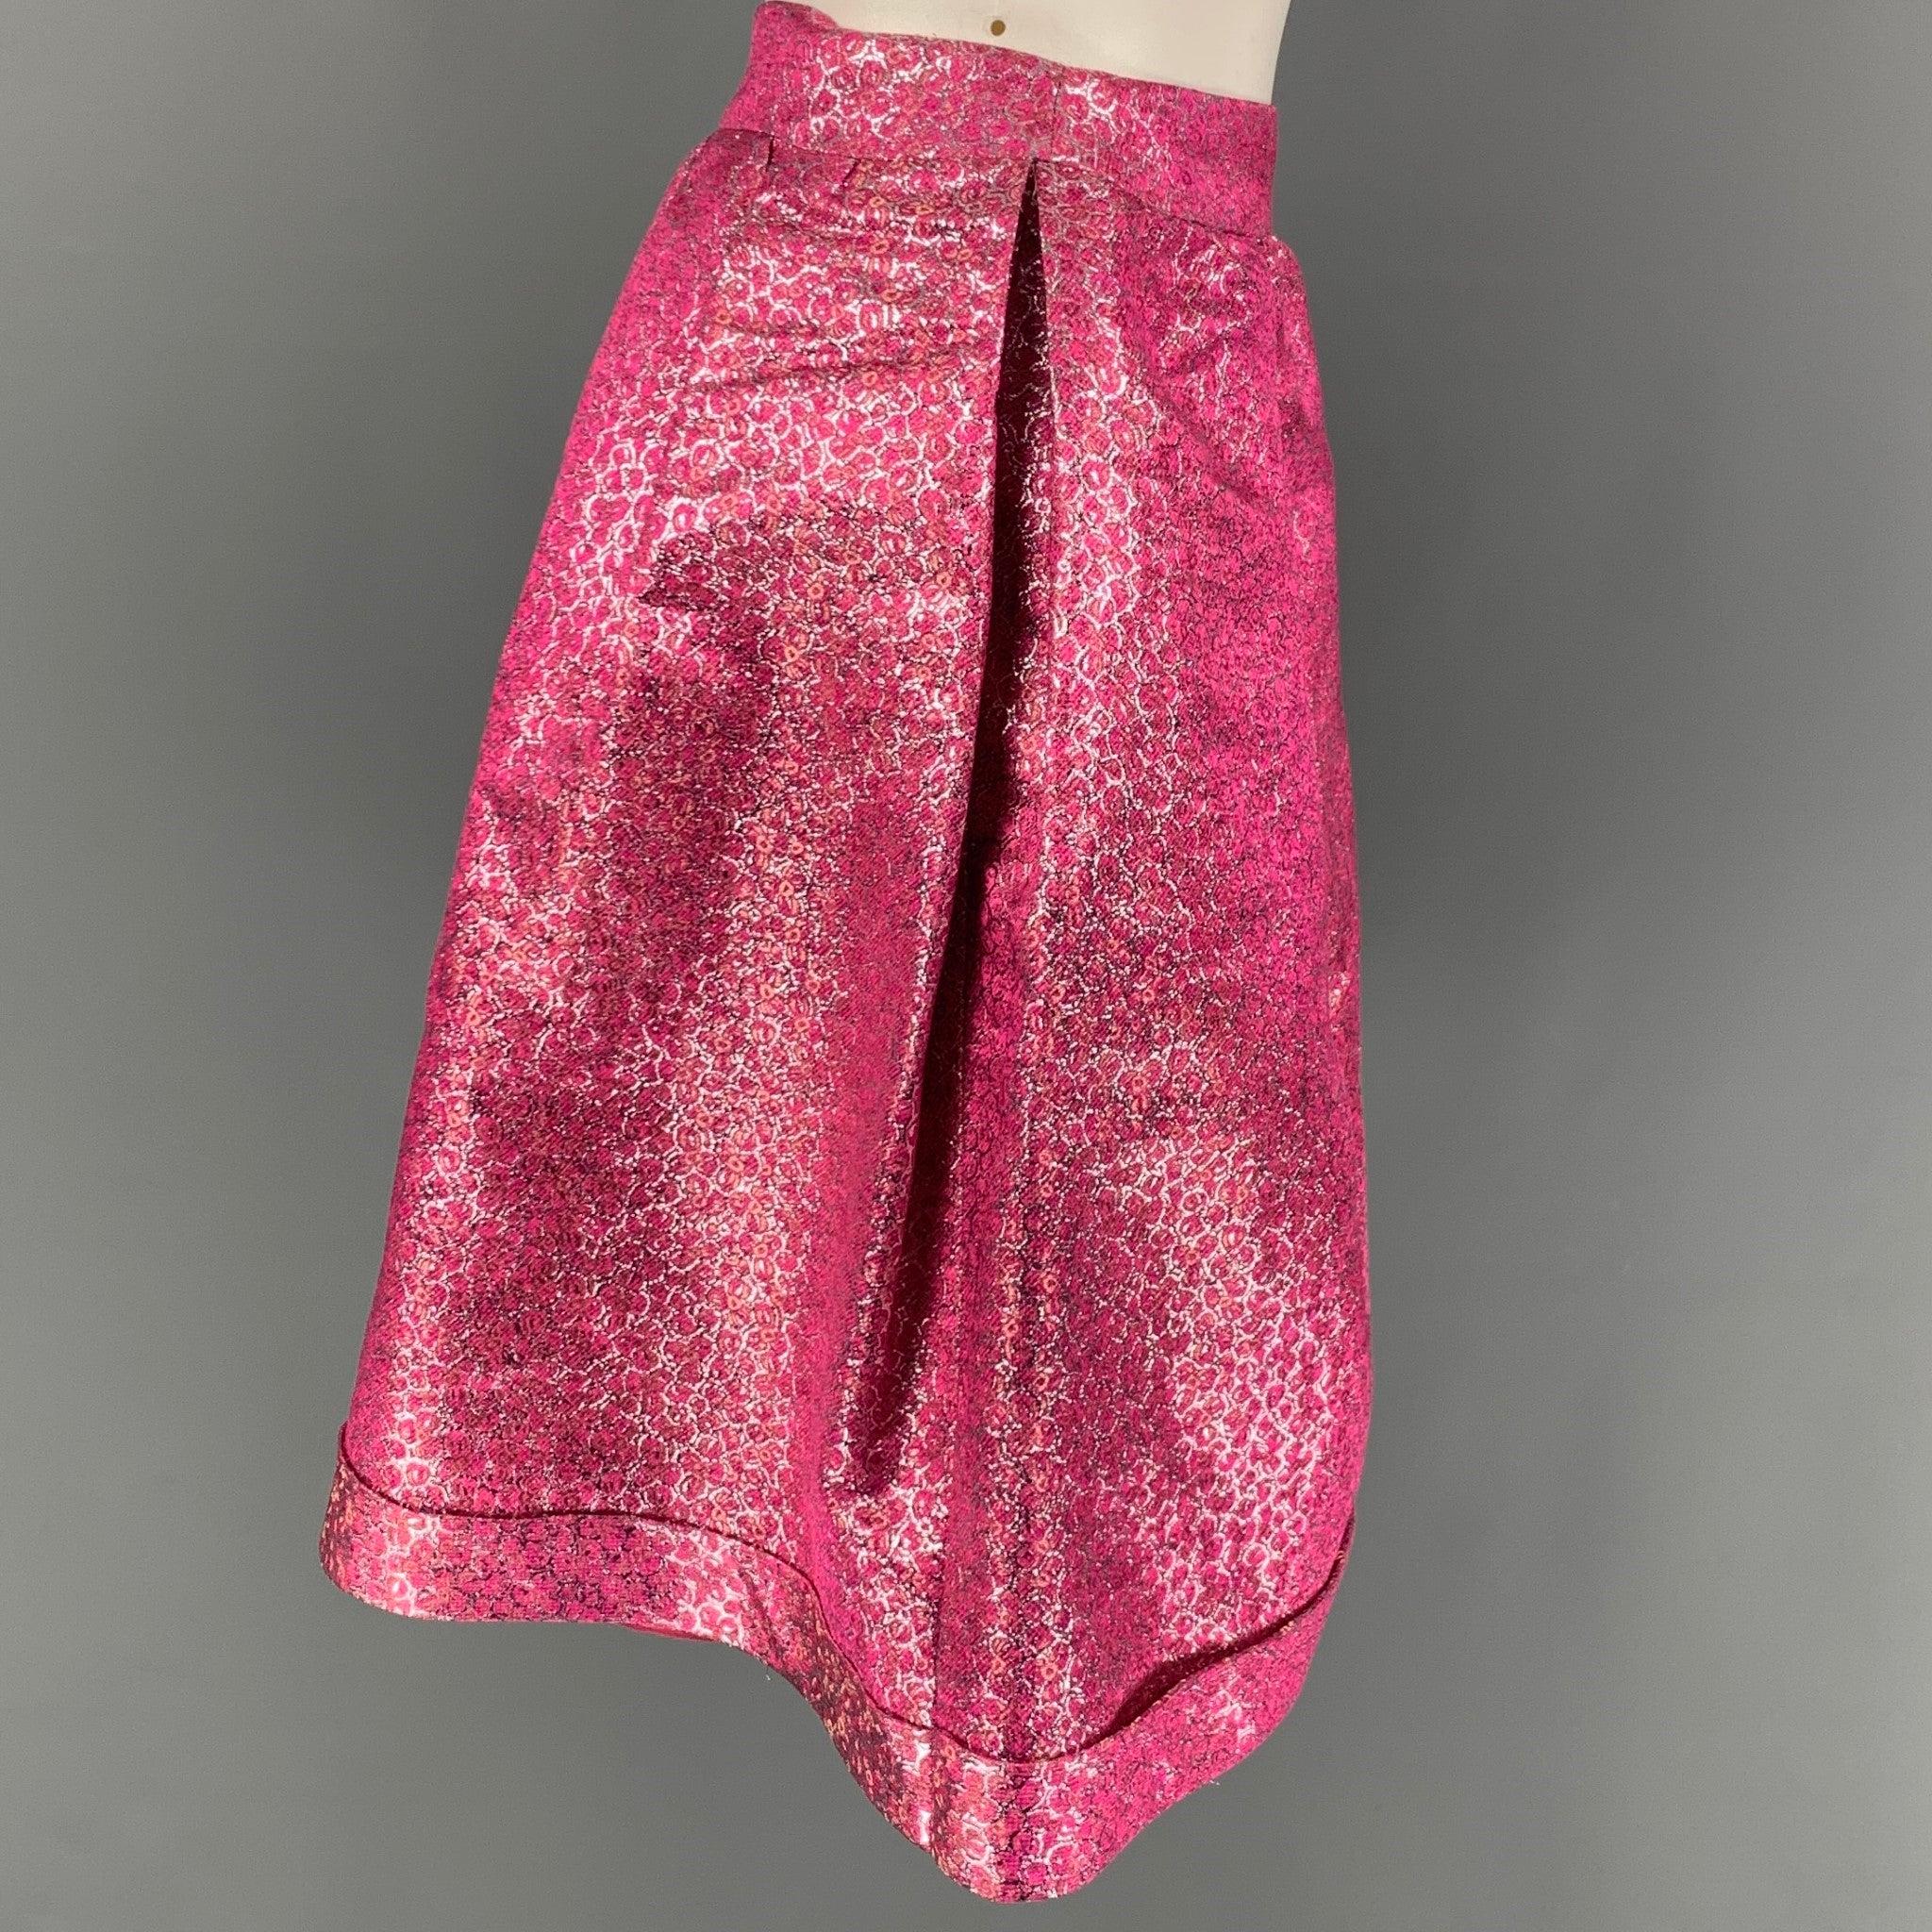 La jupe PRORSUM de Burberry se compose d'un polyester/soie rose métallisé et d'une doublure à glissière. Elle présente un style plissé et se ferme à l'aide d'une fermeture à glissière sur le côté. Fabriquées en Italie.
Très bien
Etat d'occasion.